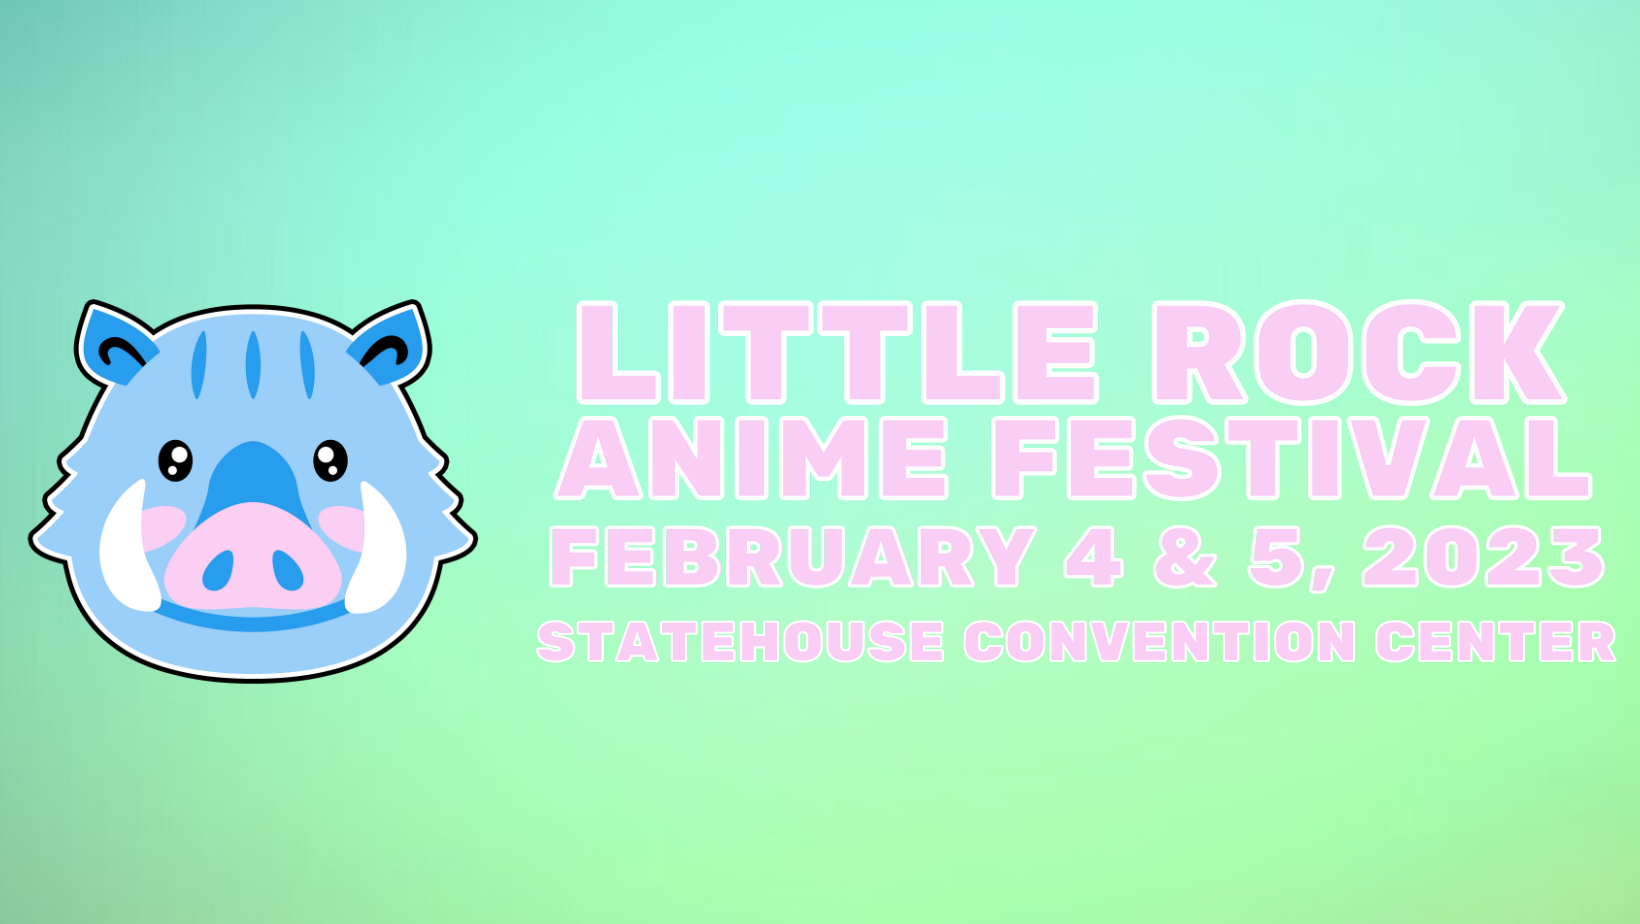 Kick-off for Arkansas Anime Festival